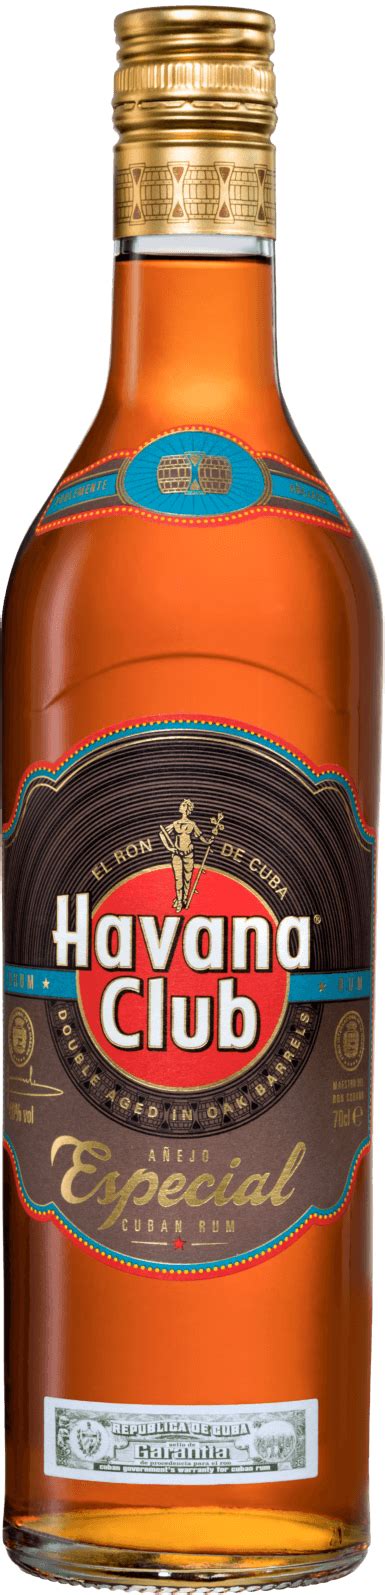 Golden rum Havana Club Especial | Havana Club